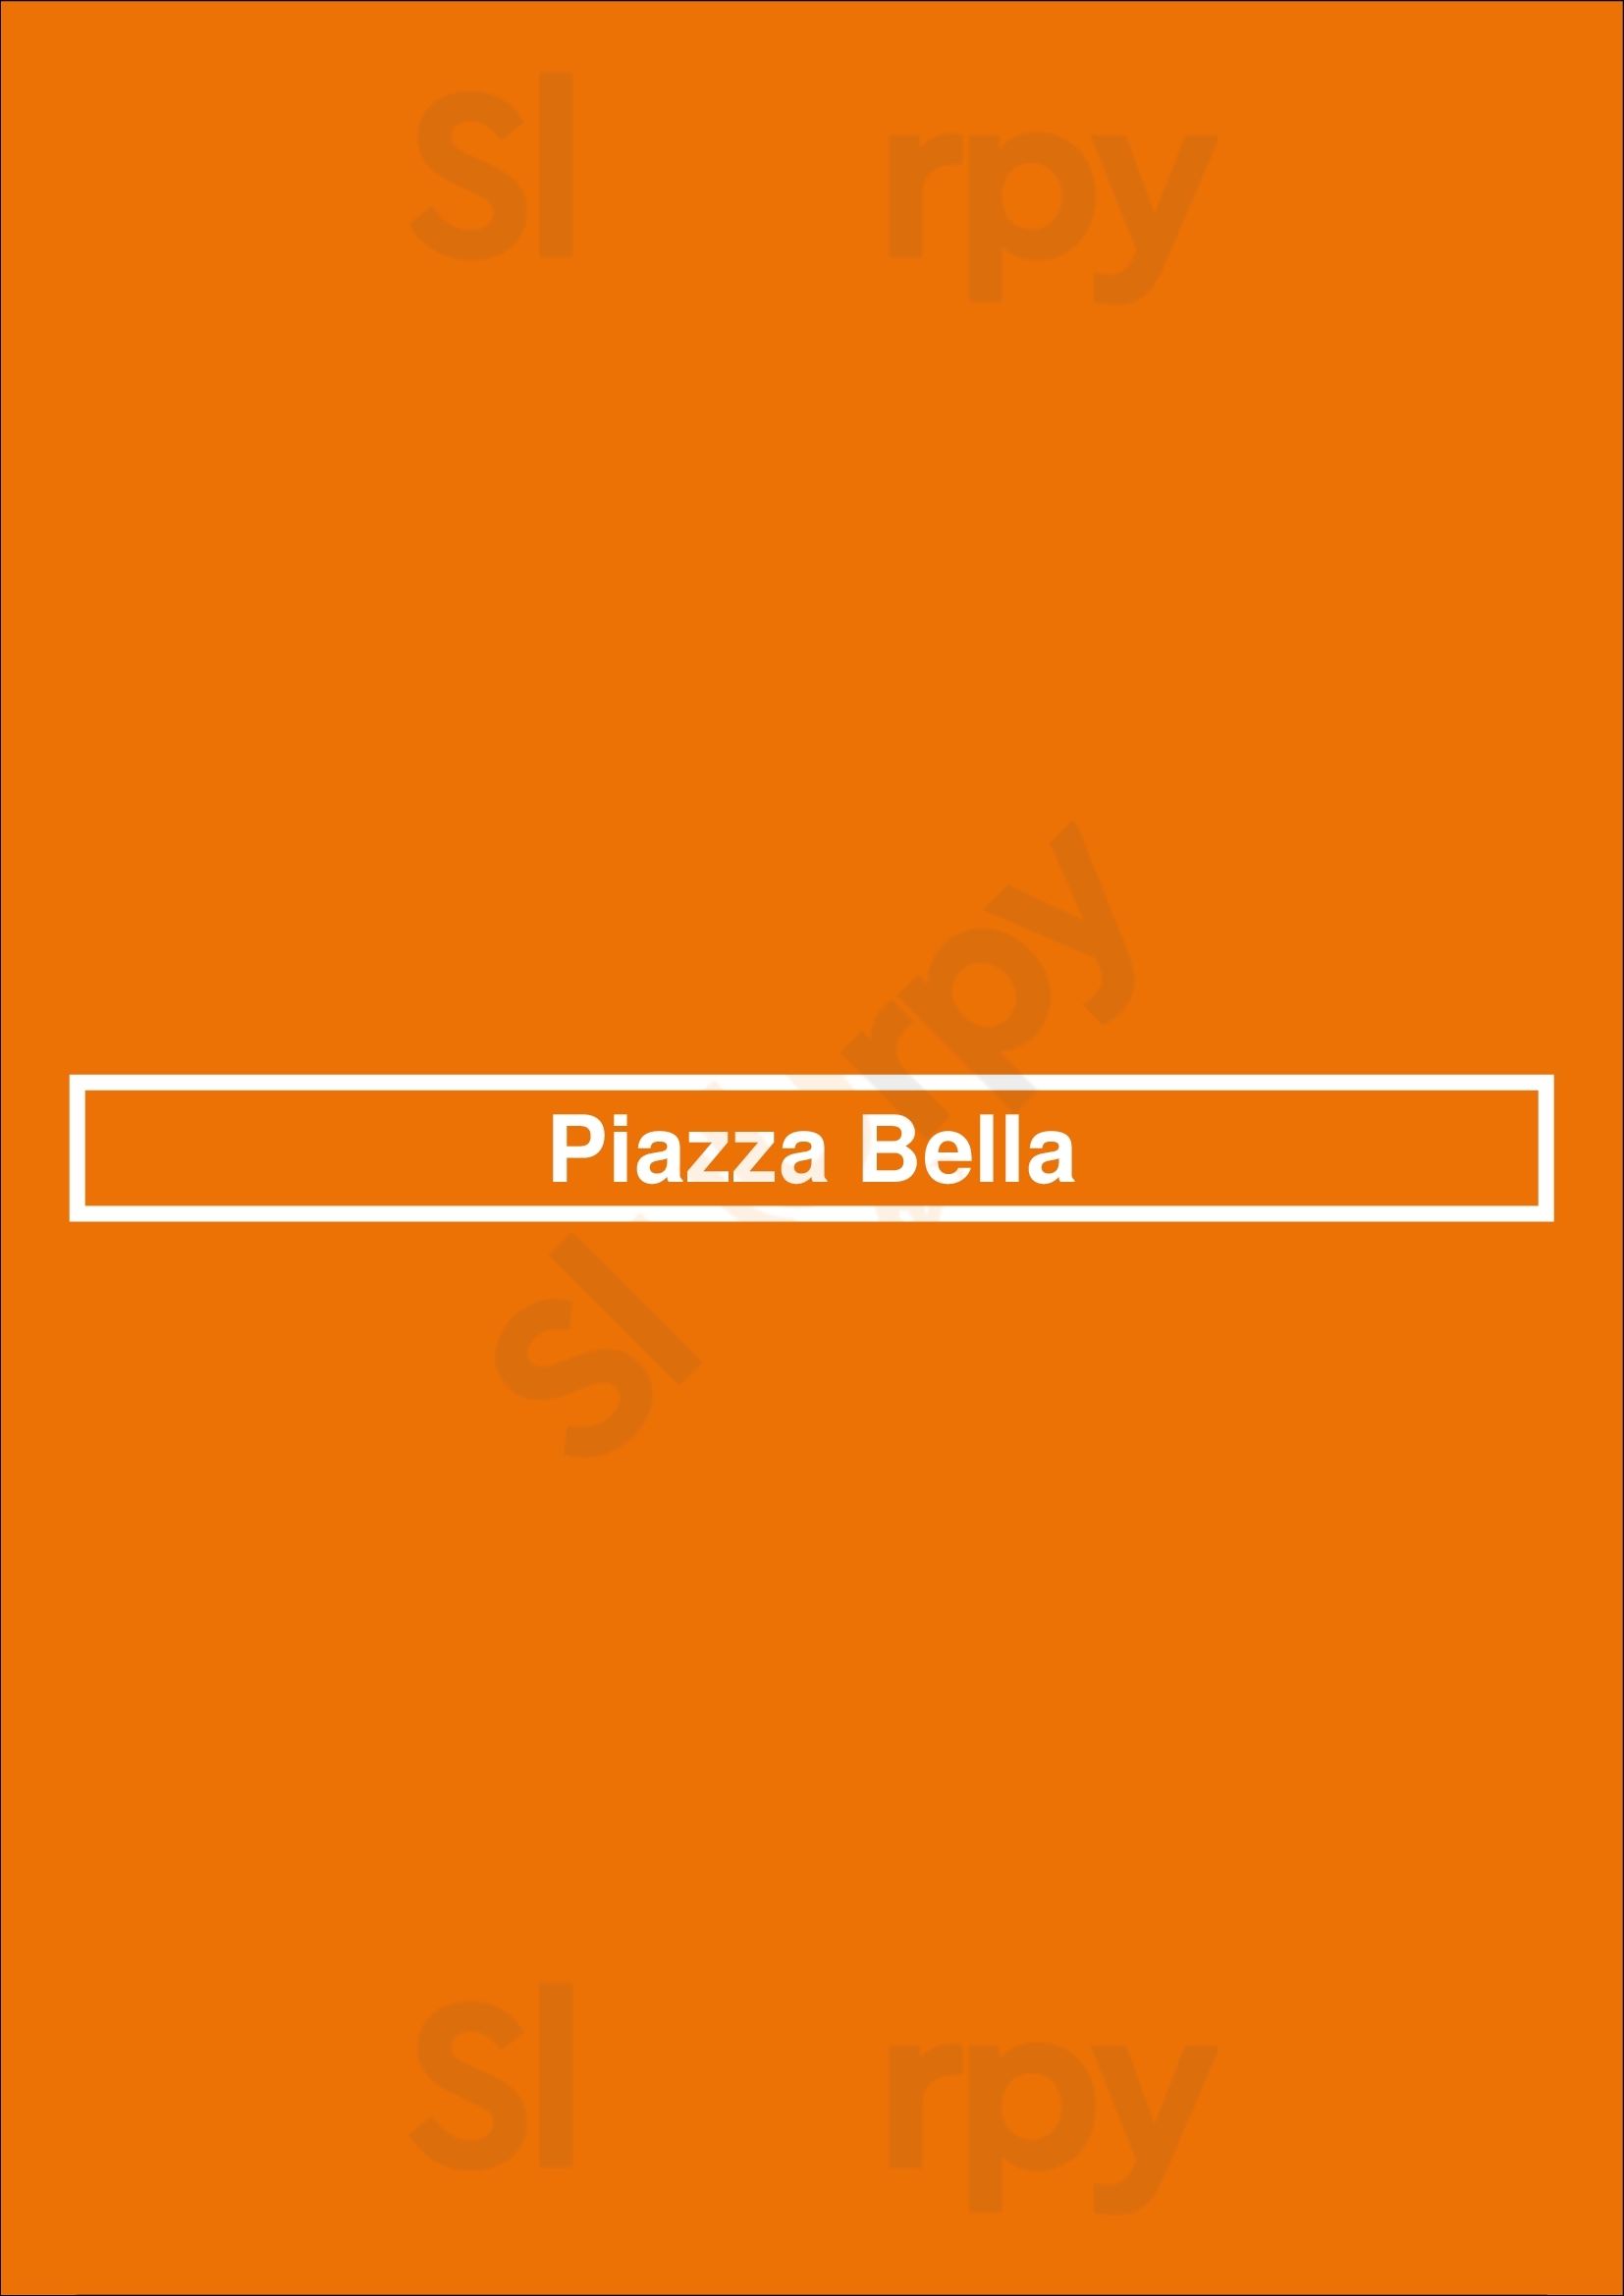 Piazza Bella Chicago Menu - 1